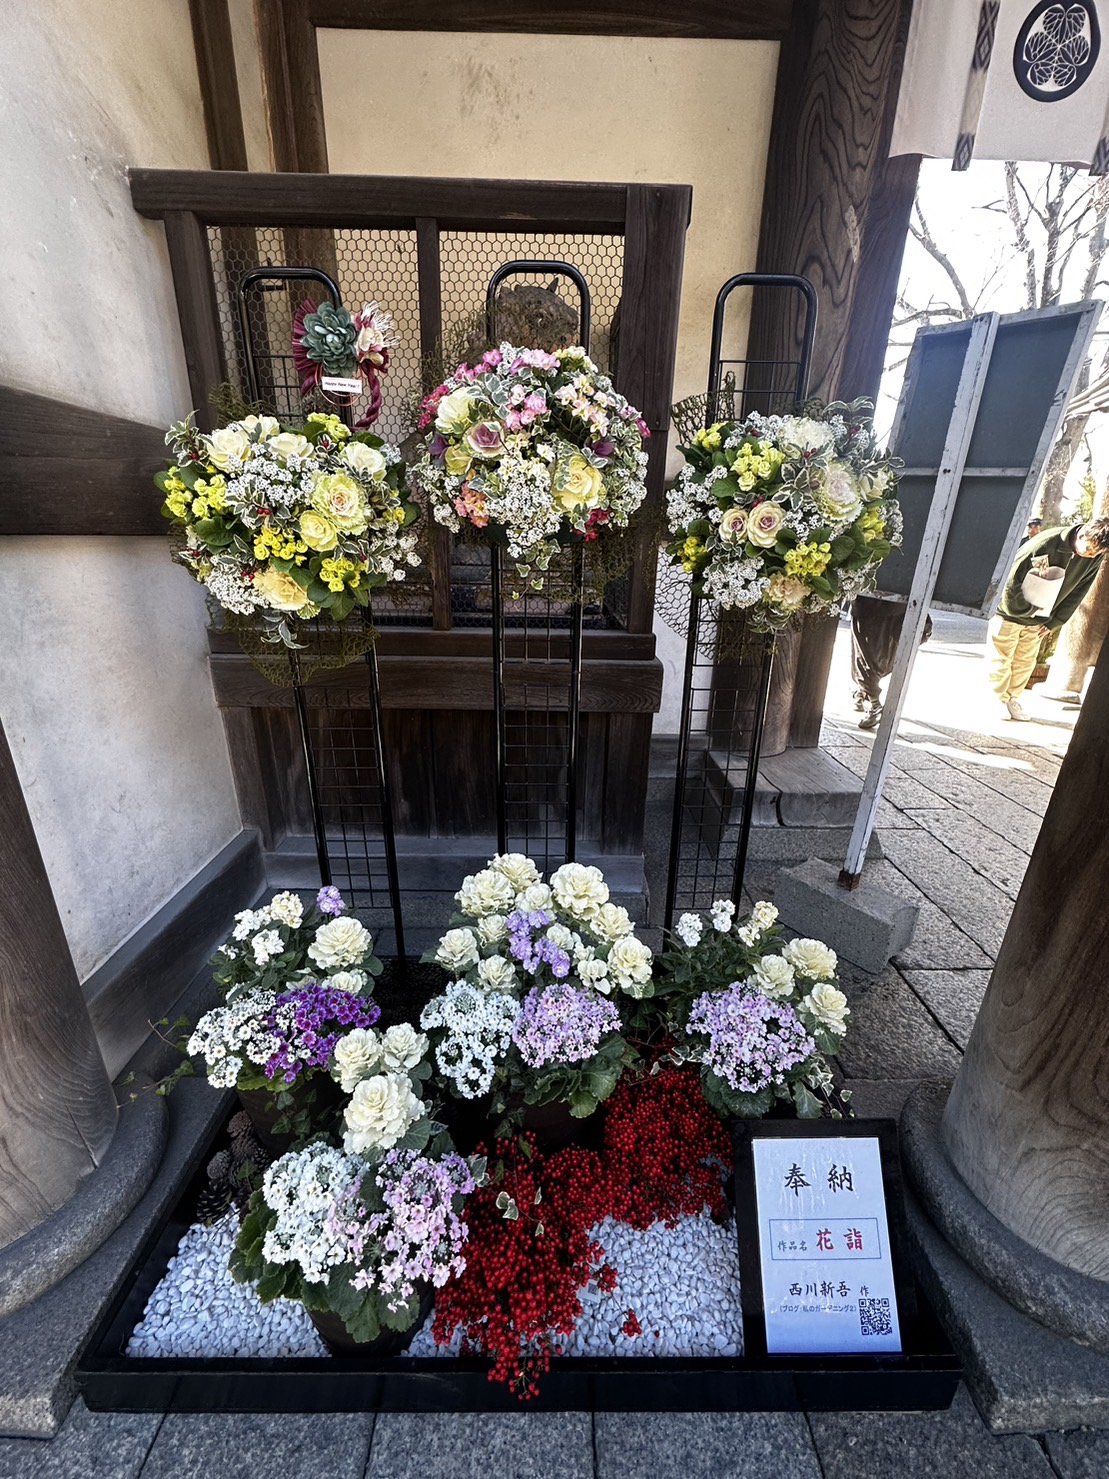 西川新吾さんの奉納花飾り「花詣」